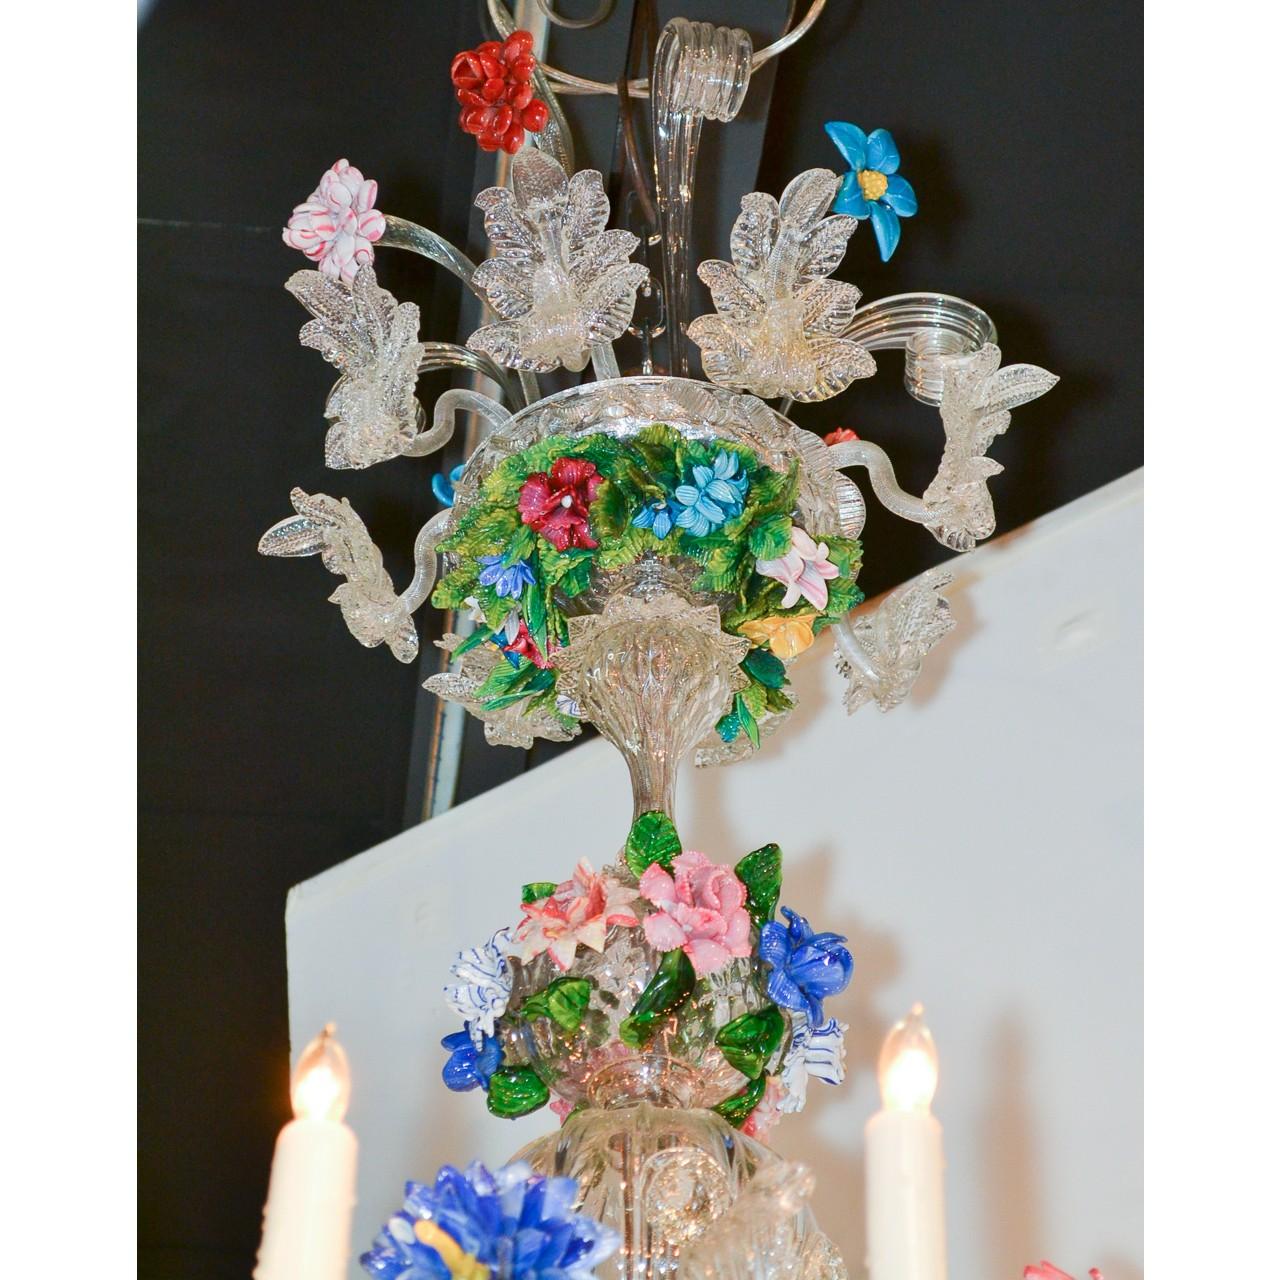 Prächtiger venezianischer Kronleuchter aus dem frühen 20. Jahrhundert aus mehrfarbigem Glas in Grün-, Blau-, Lavendel-, Rot- und Rosatönen. Die kunstvoll gestaltete Krone mit Blattrollen und Blattgirlanden ist mit Trieben bunter Wildblumen